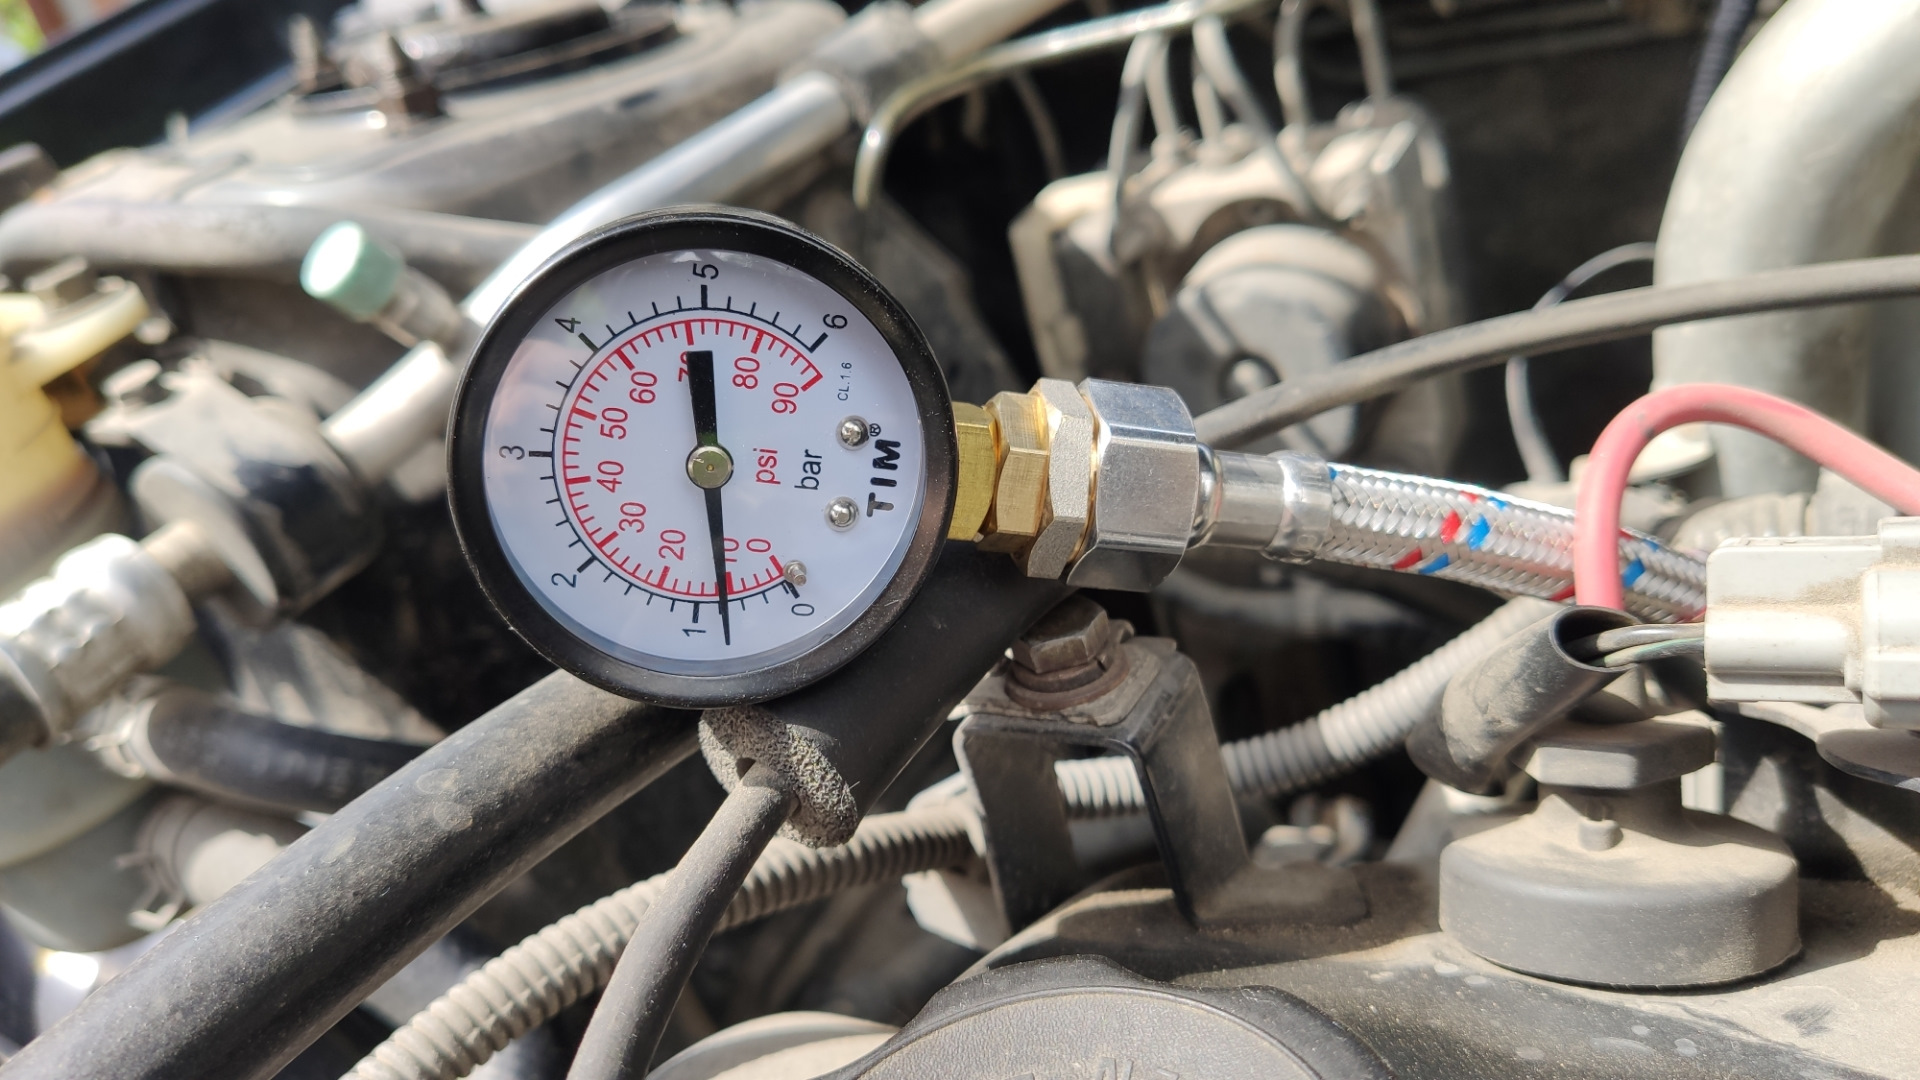 Peugeot давление масла. Замер давления топлива Прадо 150 4.0. Пежо 308 замер давления топлива. Замер давления топлива Солярис 1.6. Выносной манометр давления топлива на Пежо 308.